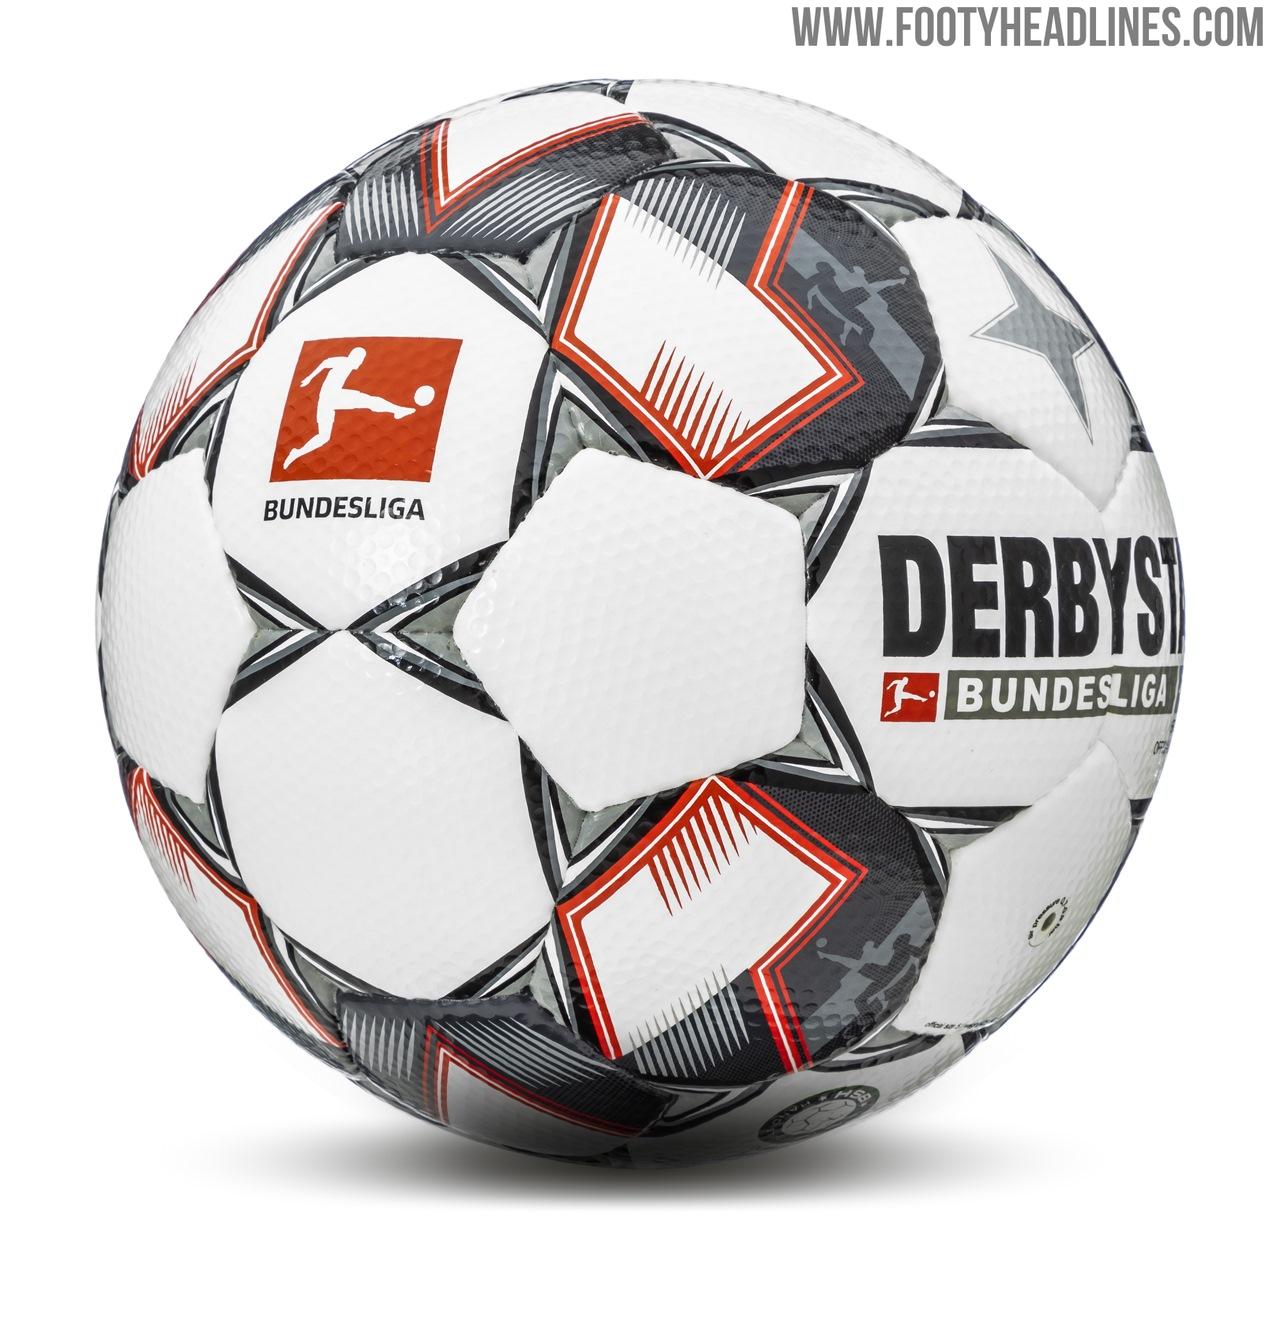 derbystar-bundesliga-ball-18-19-3.jpg